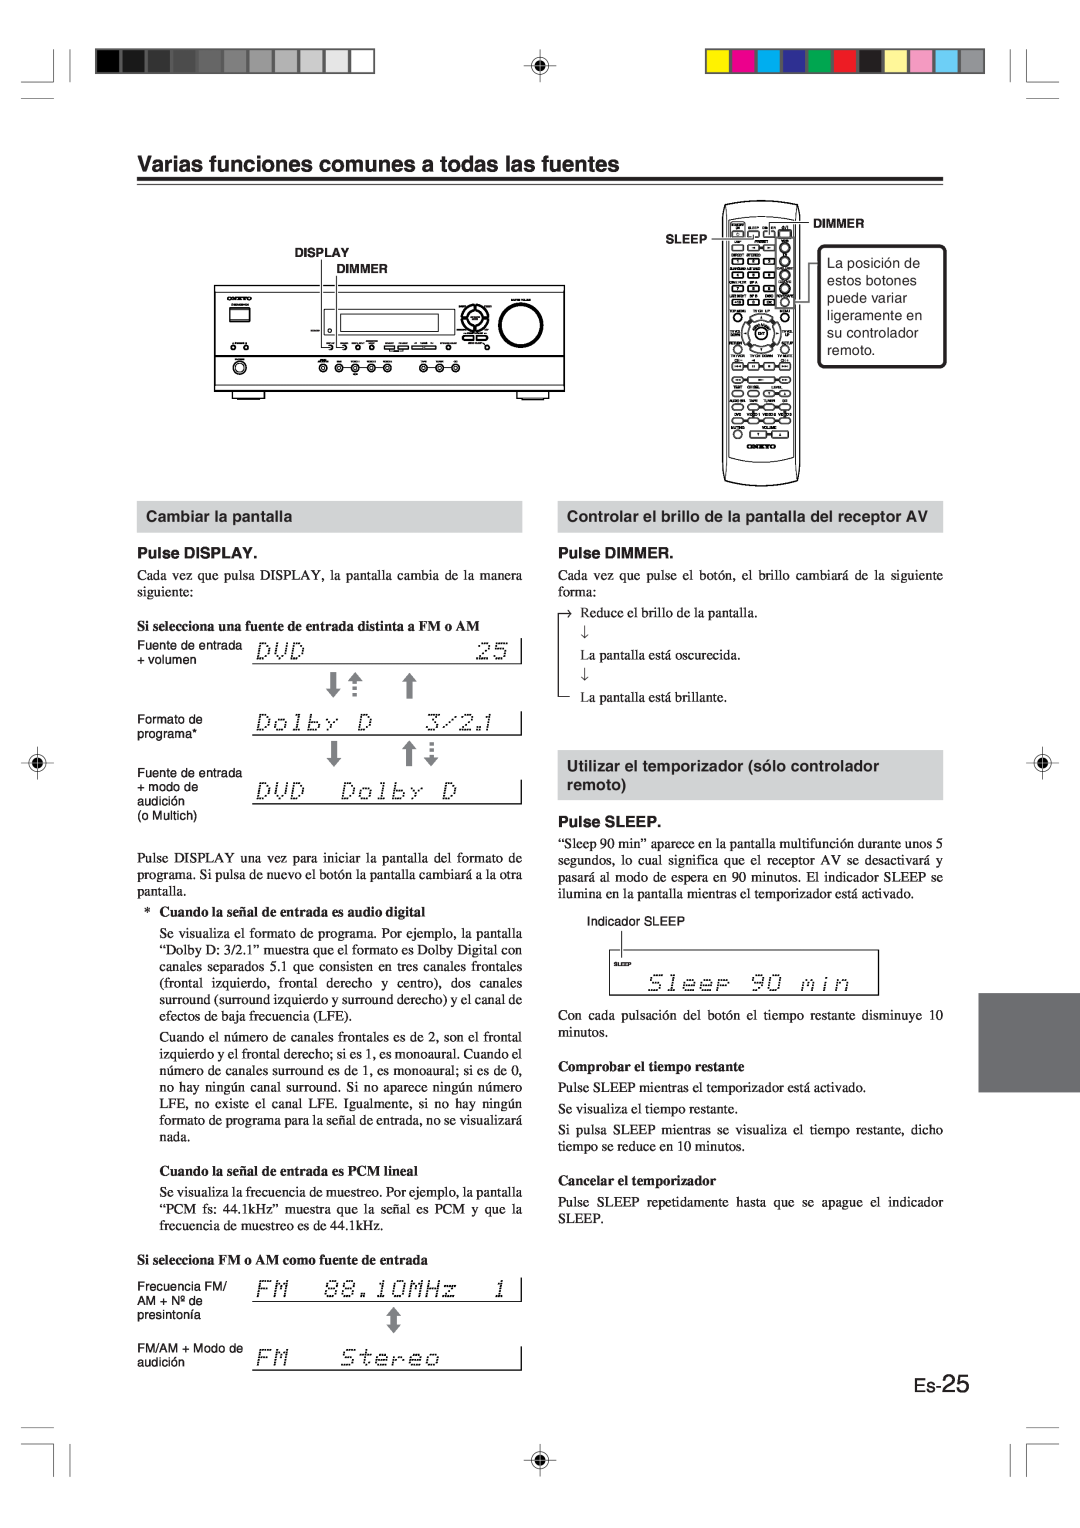 Onkyo HT-R420 manual Varias funciones comunes a todas las fuentes, Es-25, Cuando la señal de entrada es audio digital 